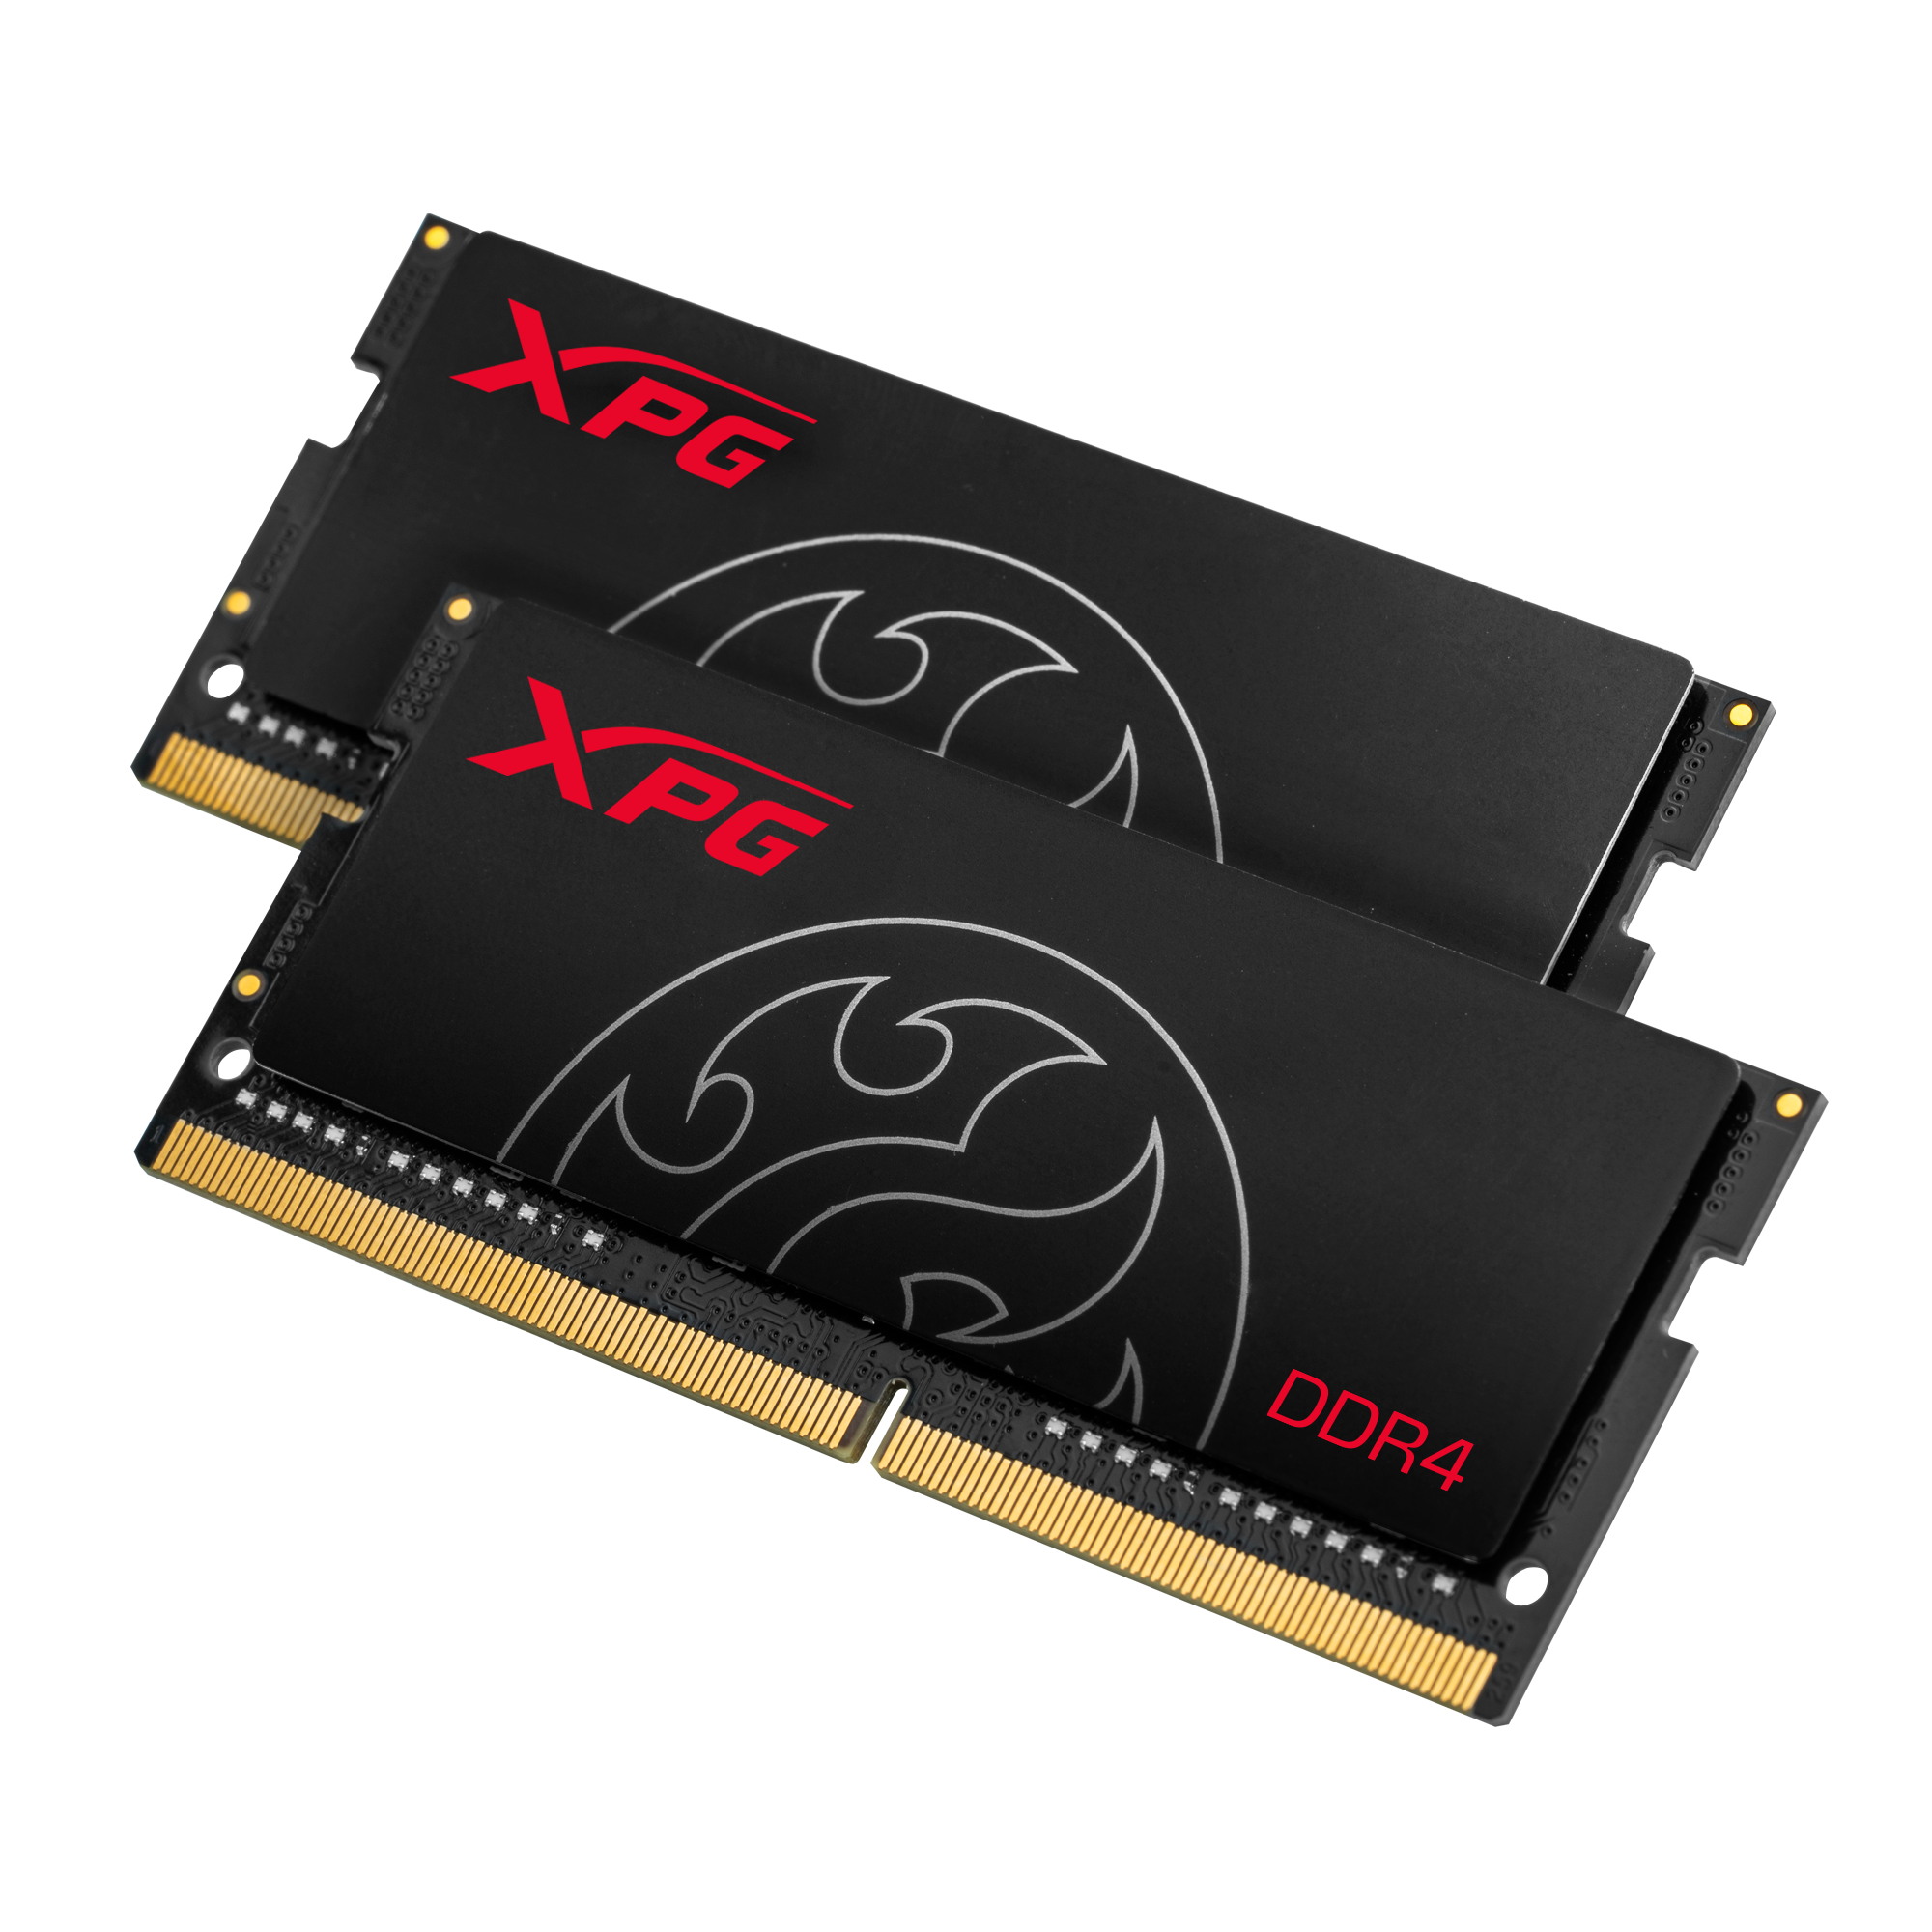 Immagine pubblicata in relazione al seguente contenuto: Gaming & Overclocking: ADATA introduce i moduli di memoria XPG Hunter DDR4 | Nome immagine: news30287_XPG-Hunter-DDR4_2.png